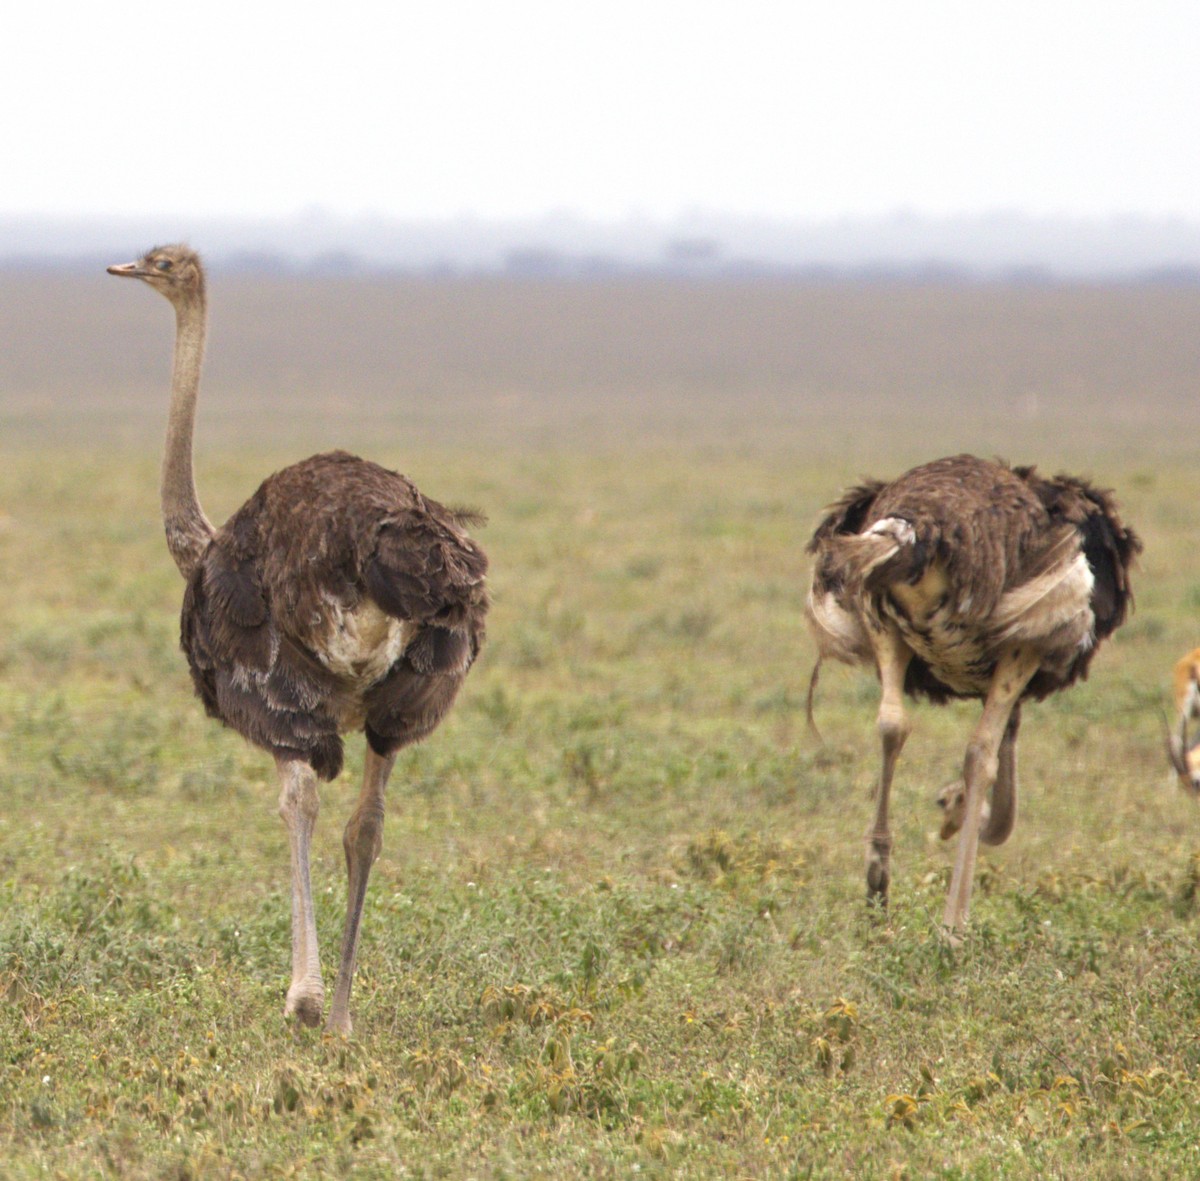 Common Ostrich - Ethie Ziselman